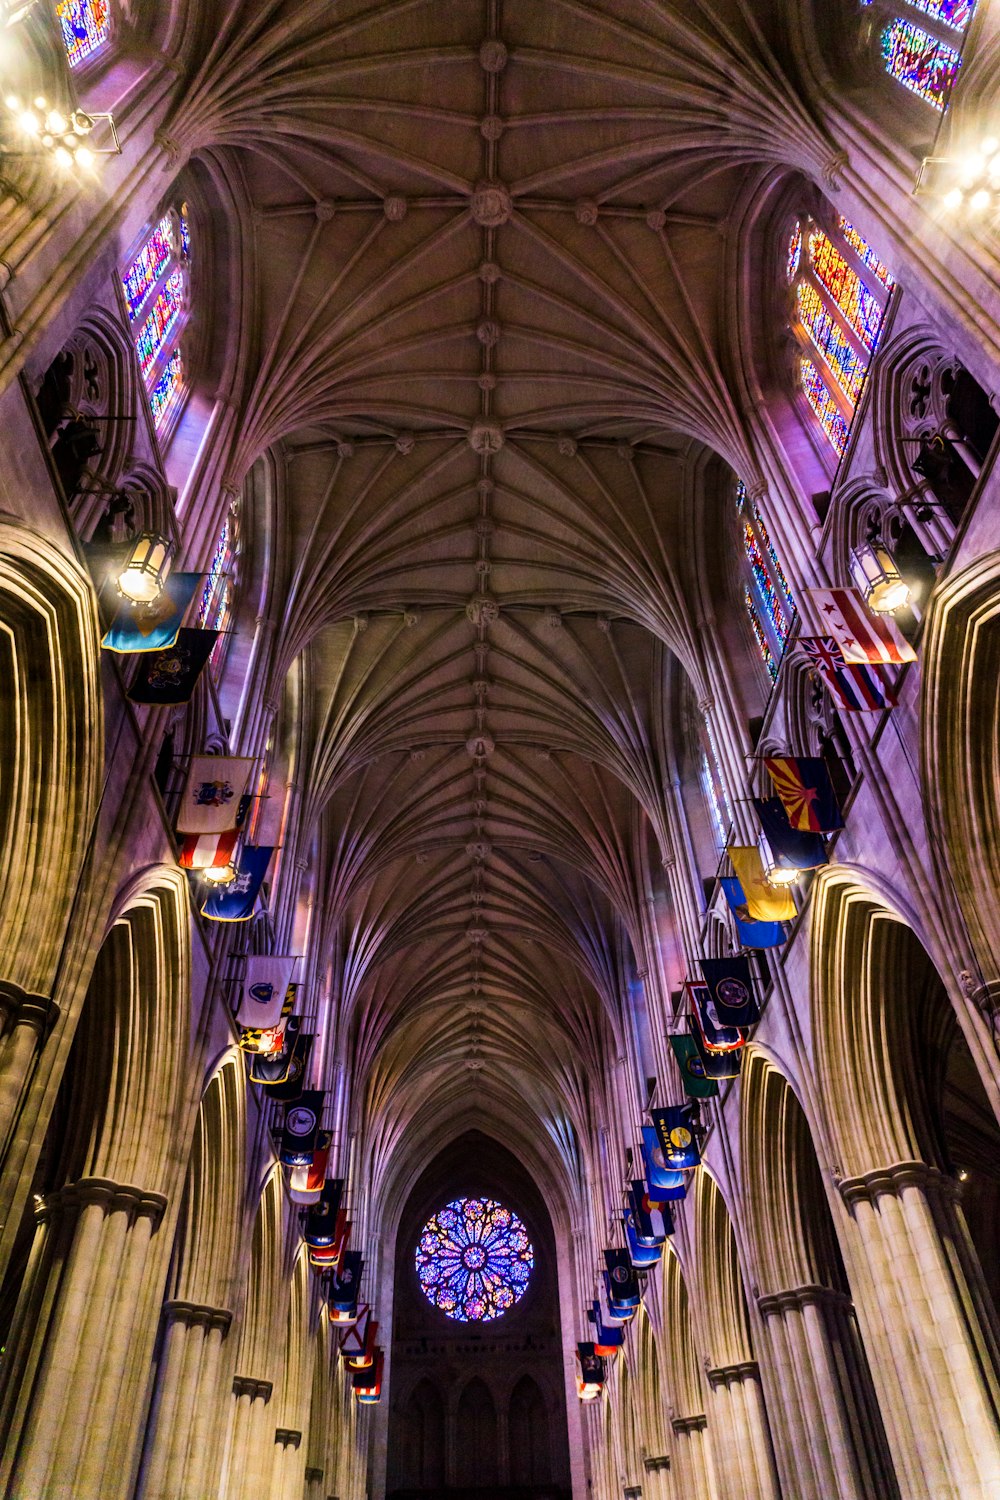 Photographie d’intérieur en contre-plongée de la cathédrale avec des vitraux multicolores